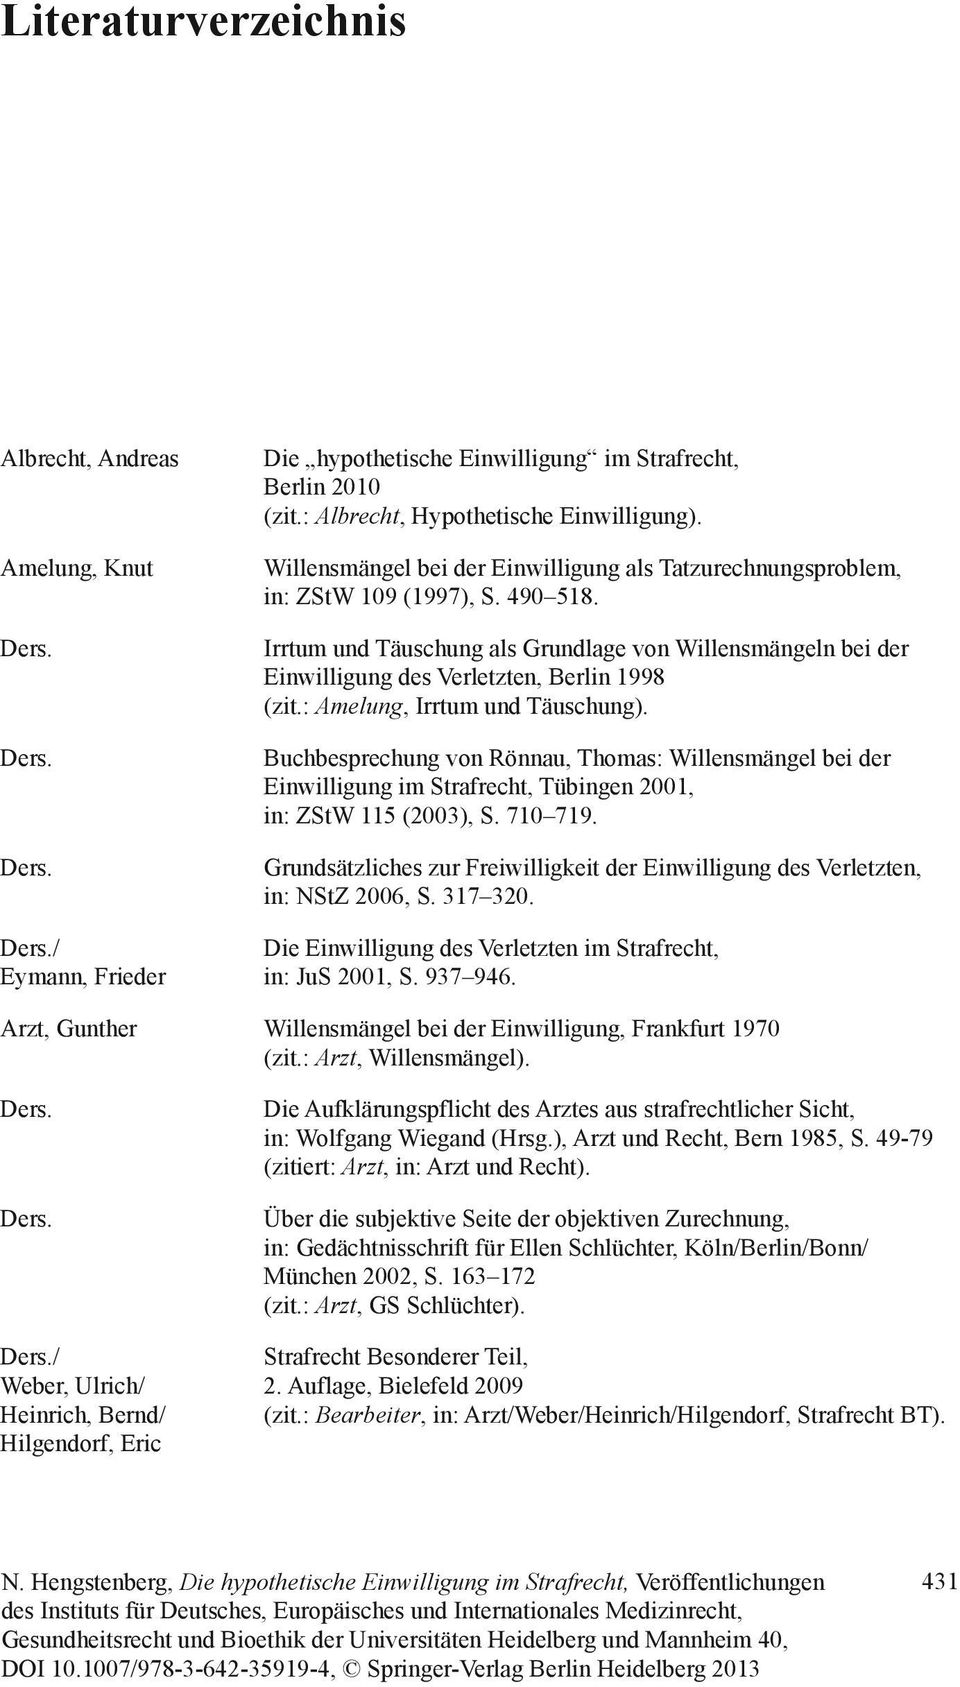 Irrtum und Täuschung als Grundlage von Willensmängeln bei der Einwilligung des Verletzten, Berlin 1998 (zit.: Amelung, Irrtum und Täuschung).